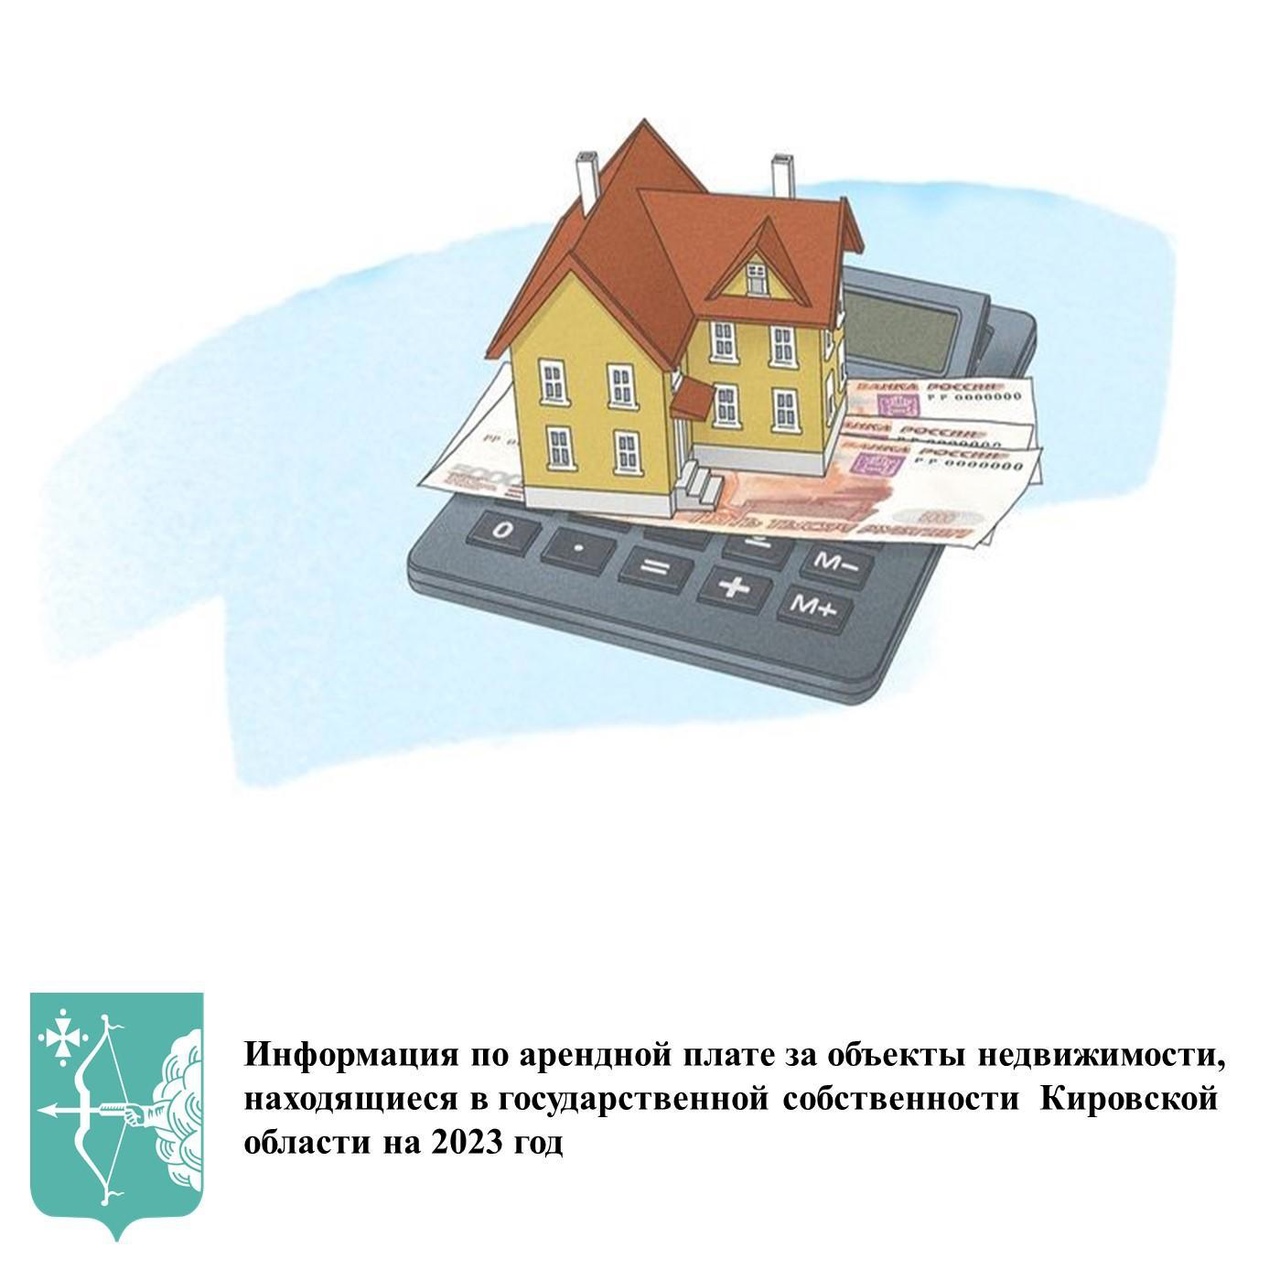 Информация по арендной плате за объекты  недвижимости, находящиеся в государственной собственности  Кировской области на 2023 год.